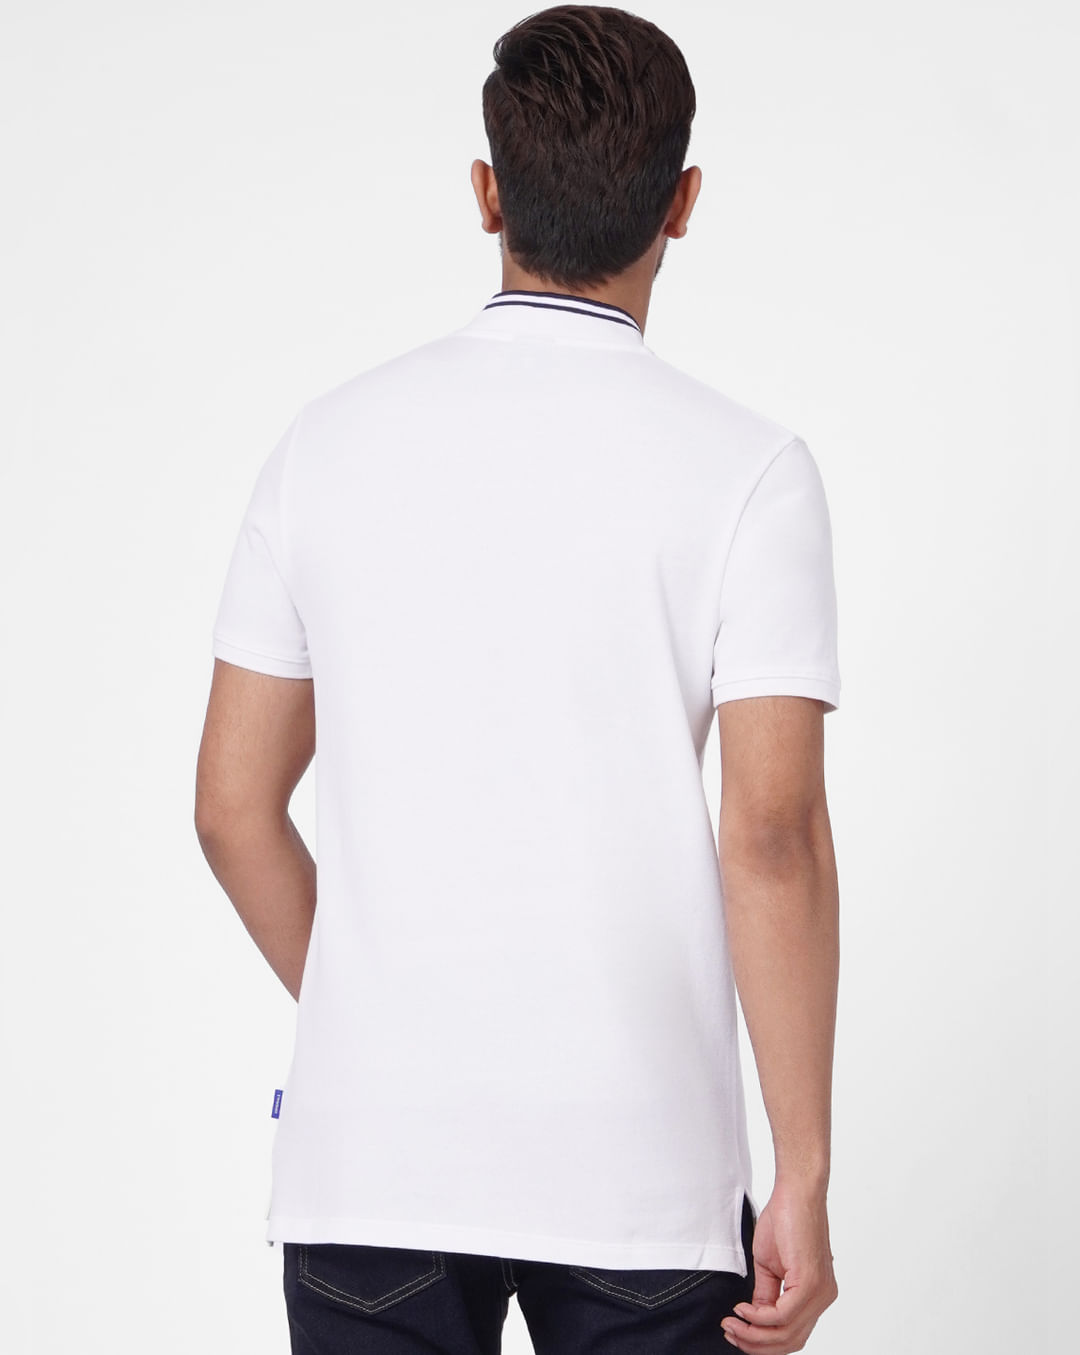 White Polo Neck T-shirt